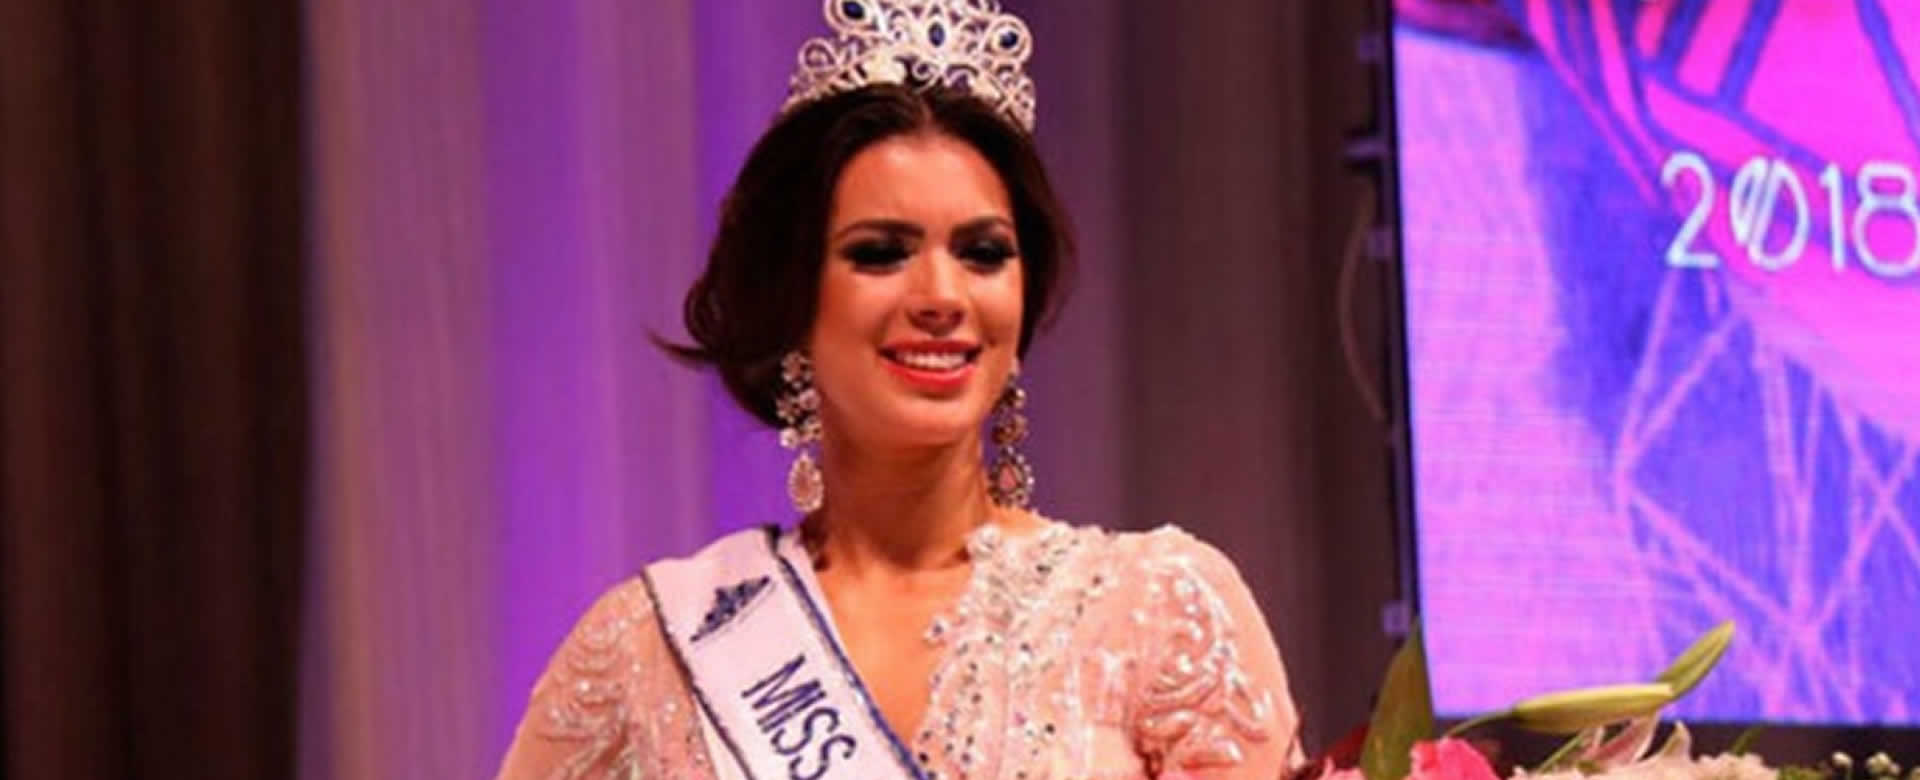 Adriana Paniagua se despide de la Corona de Miss Nicaragua